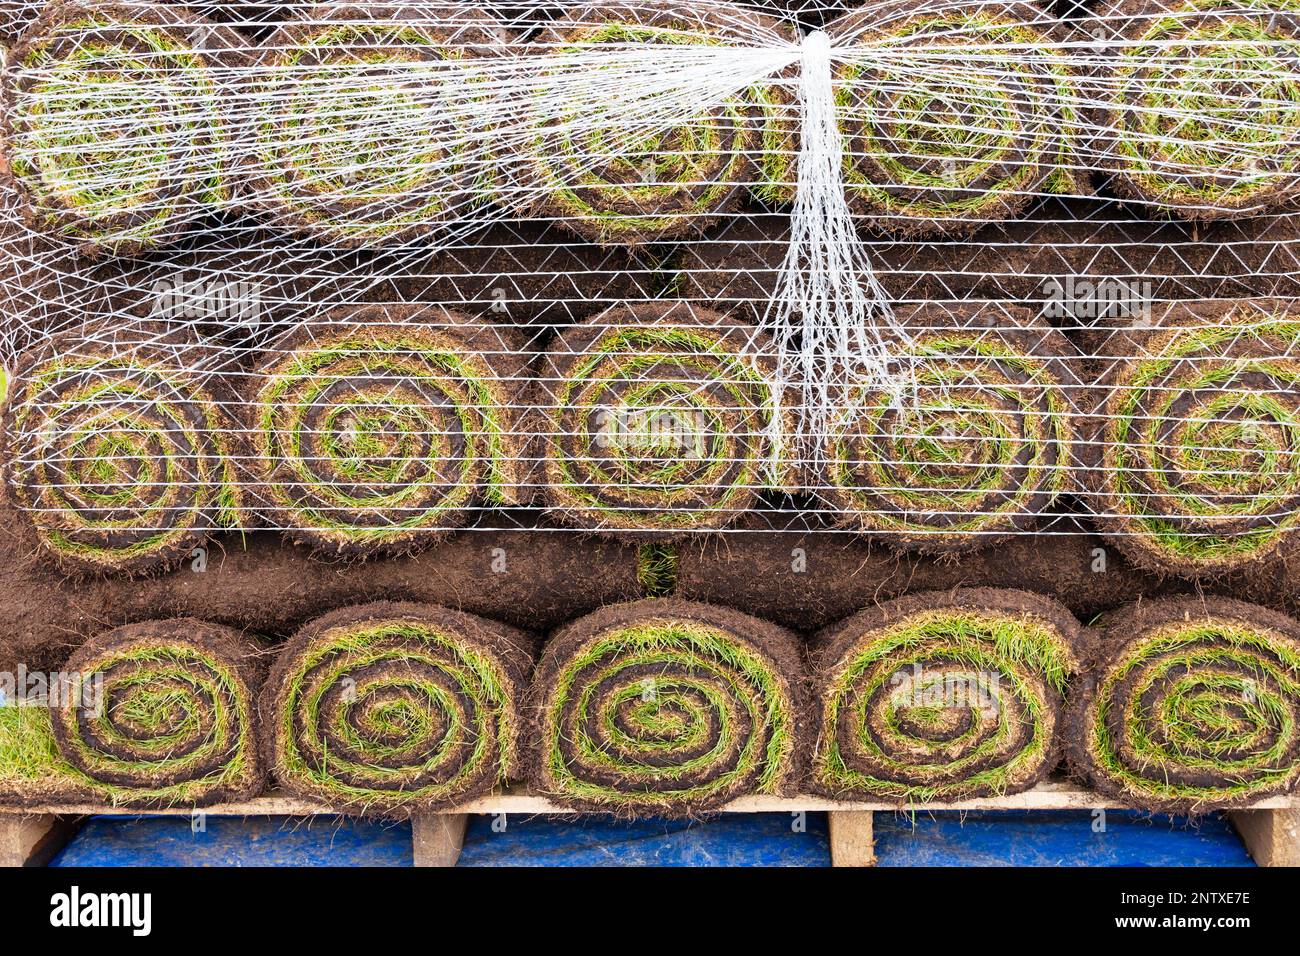 Rouleaux de gazon frais sur une palette enveloppée de filet, en attente de plantation. Style rouleau suisse. Banque D'Images